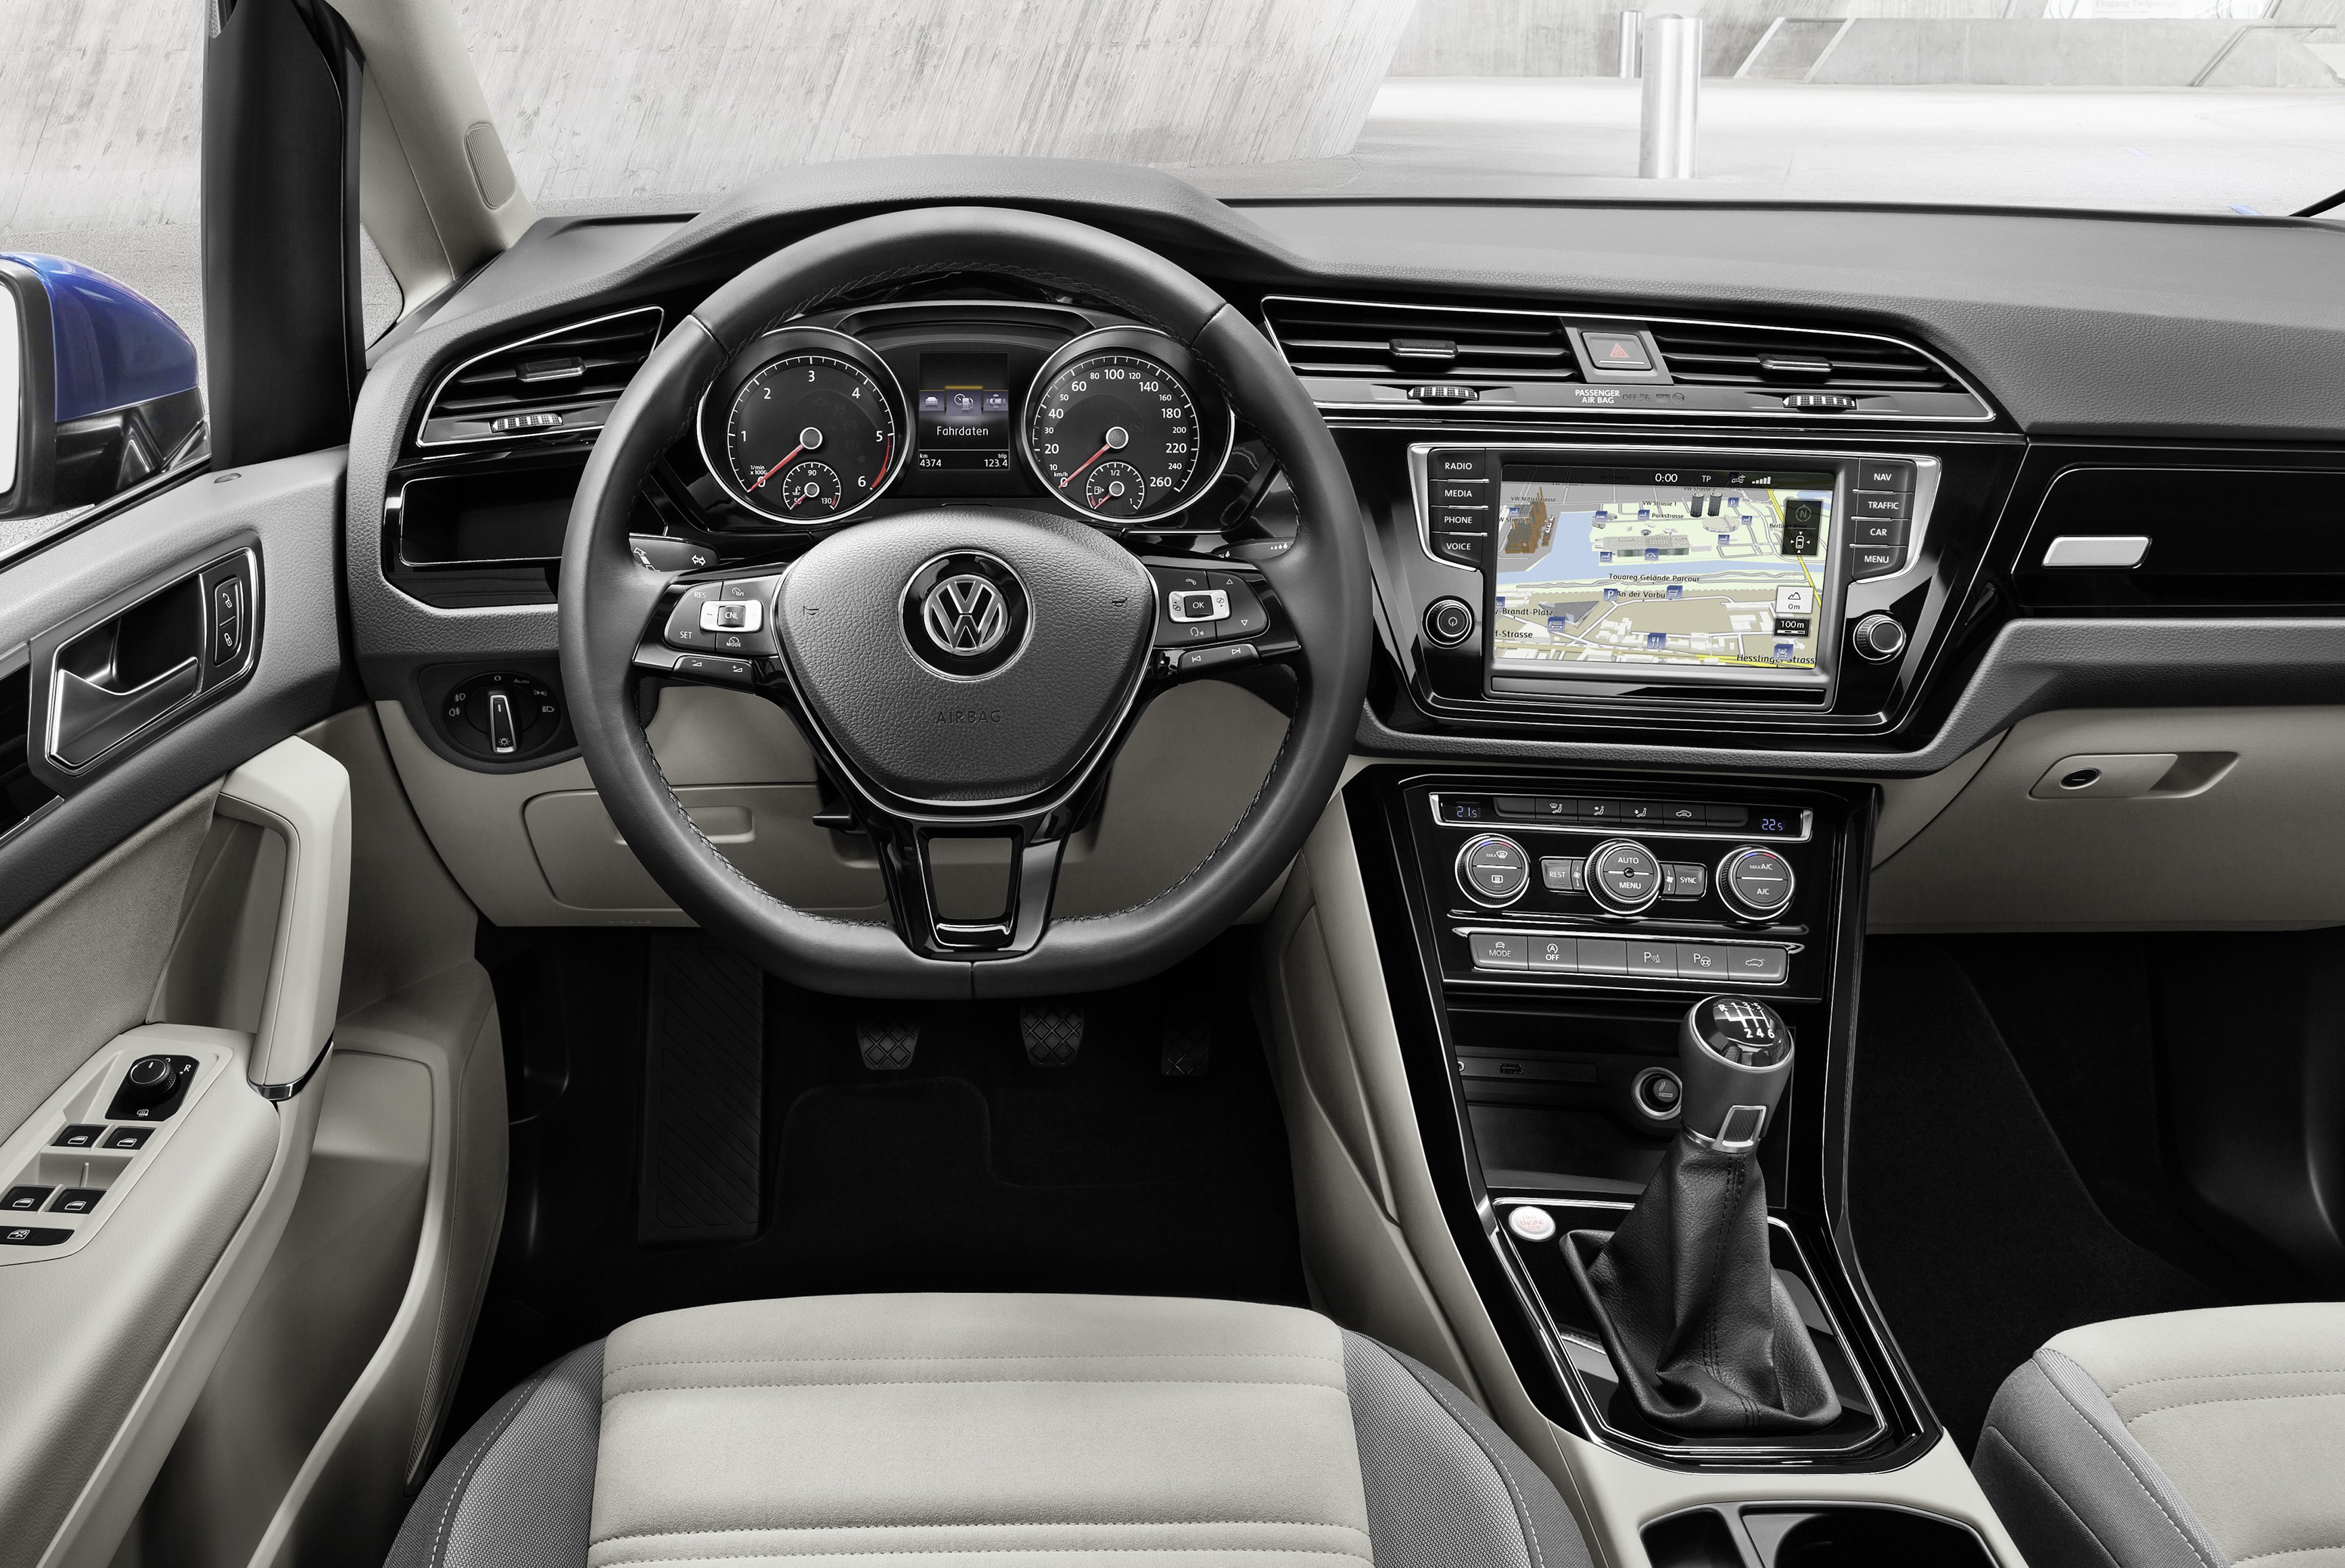 Volkswagen carplay. Volkswagen Туран 2021 салон. VW Touran 2015. Volkswagen Touran 2015 года. Фольксваген Туран новый.